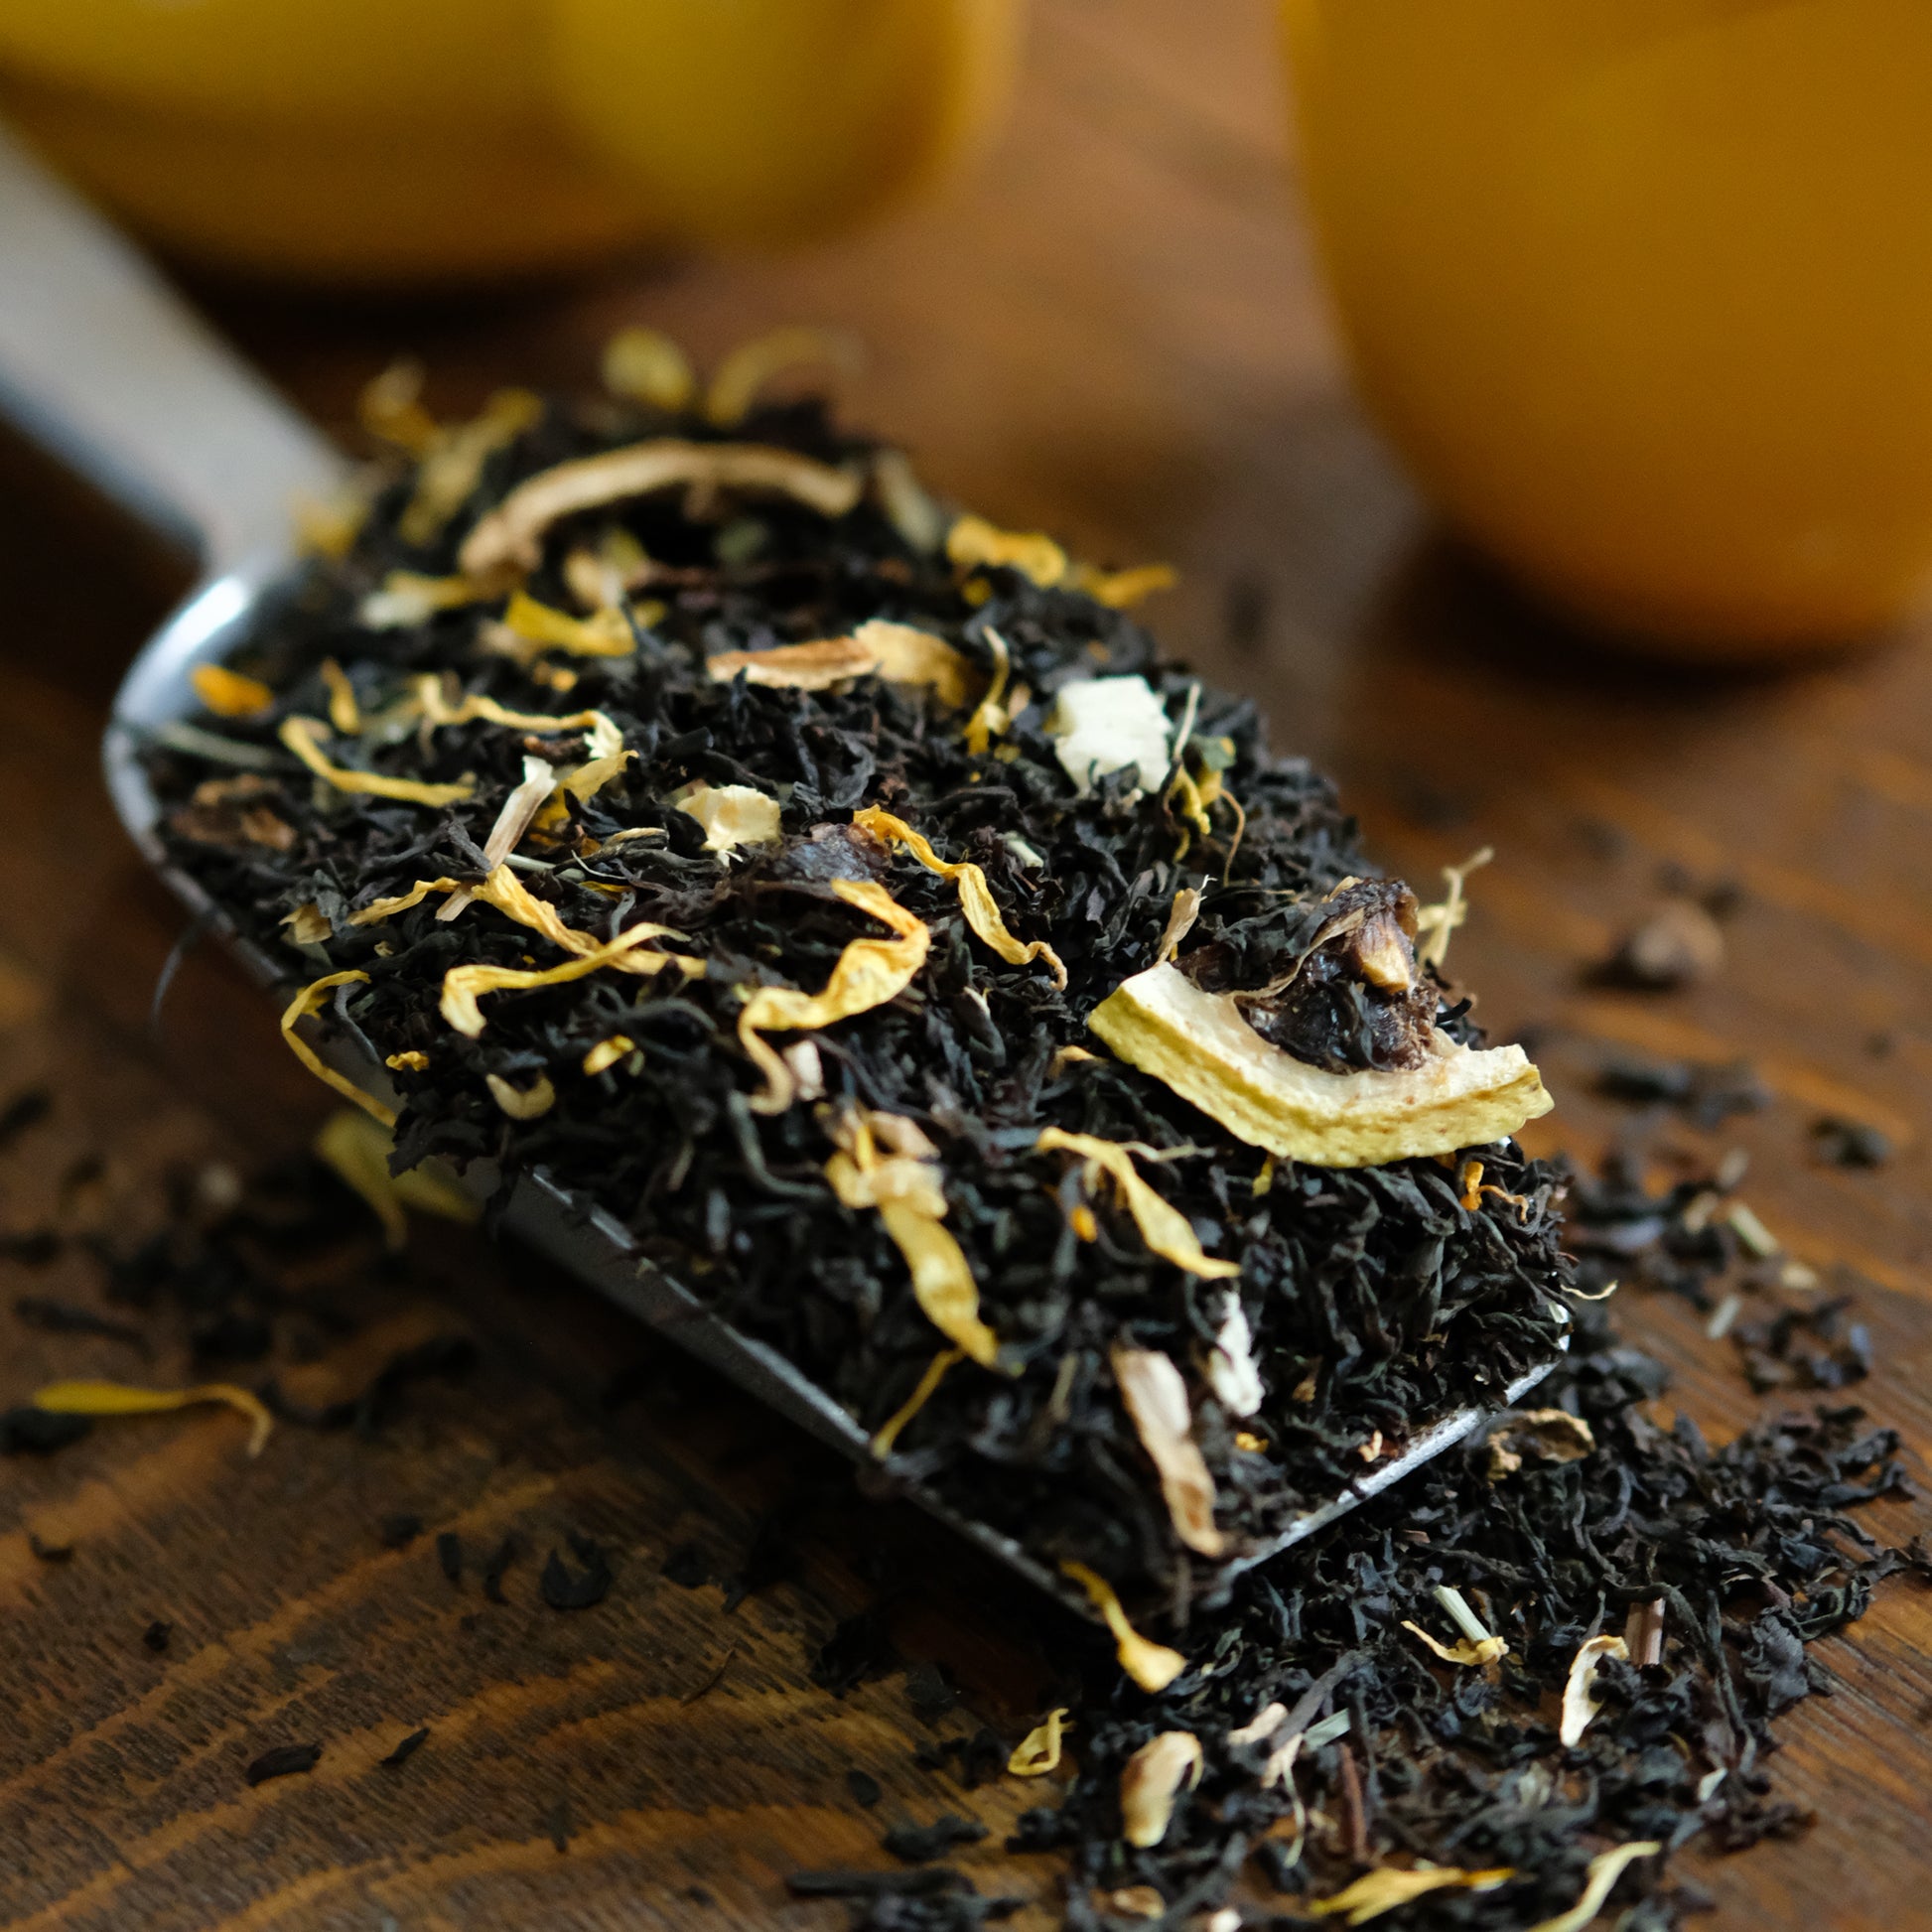 Les bienfaits du thé citron - gingembre - Feelgood Laser